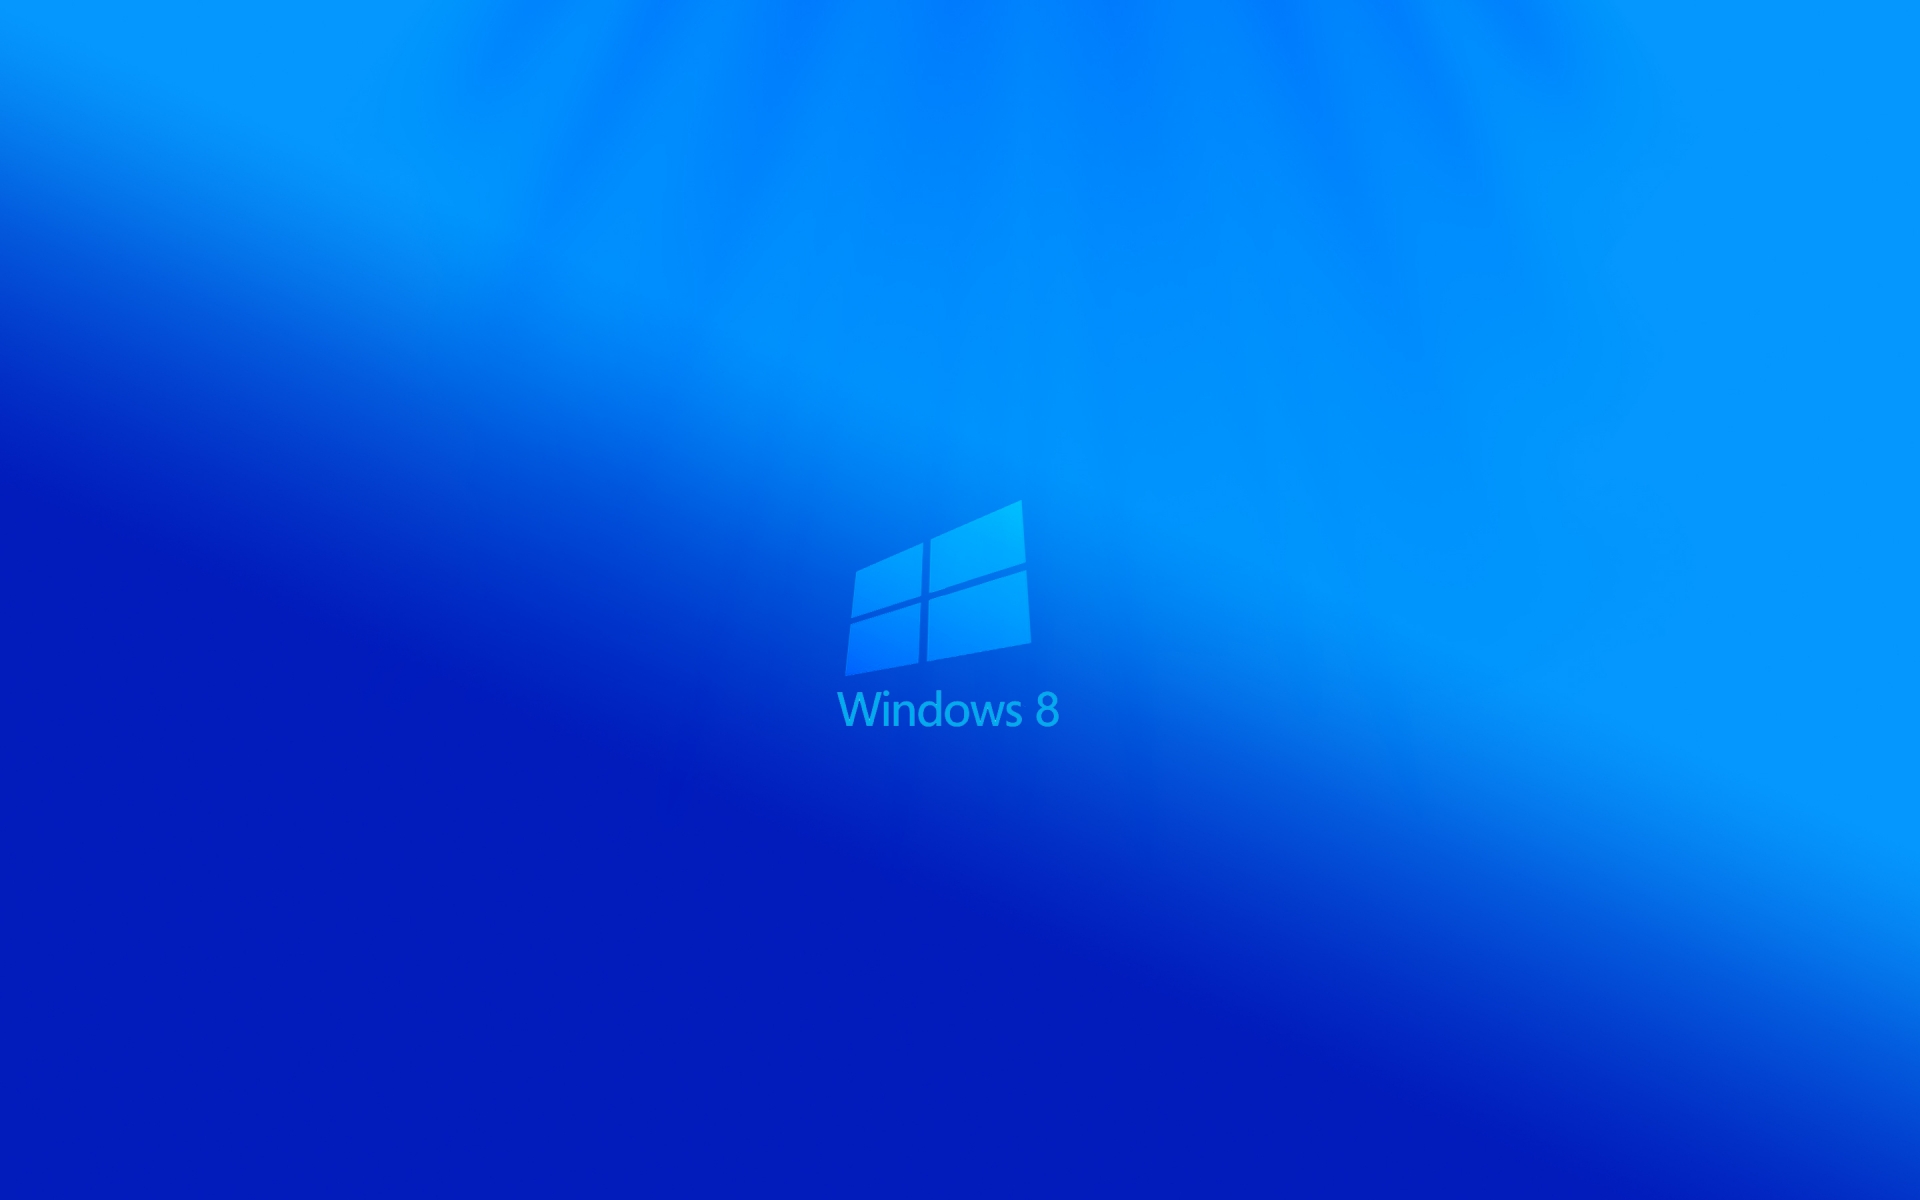 Windows 8 Light for 1920 x 1200 widescreen resolution